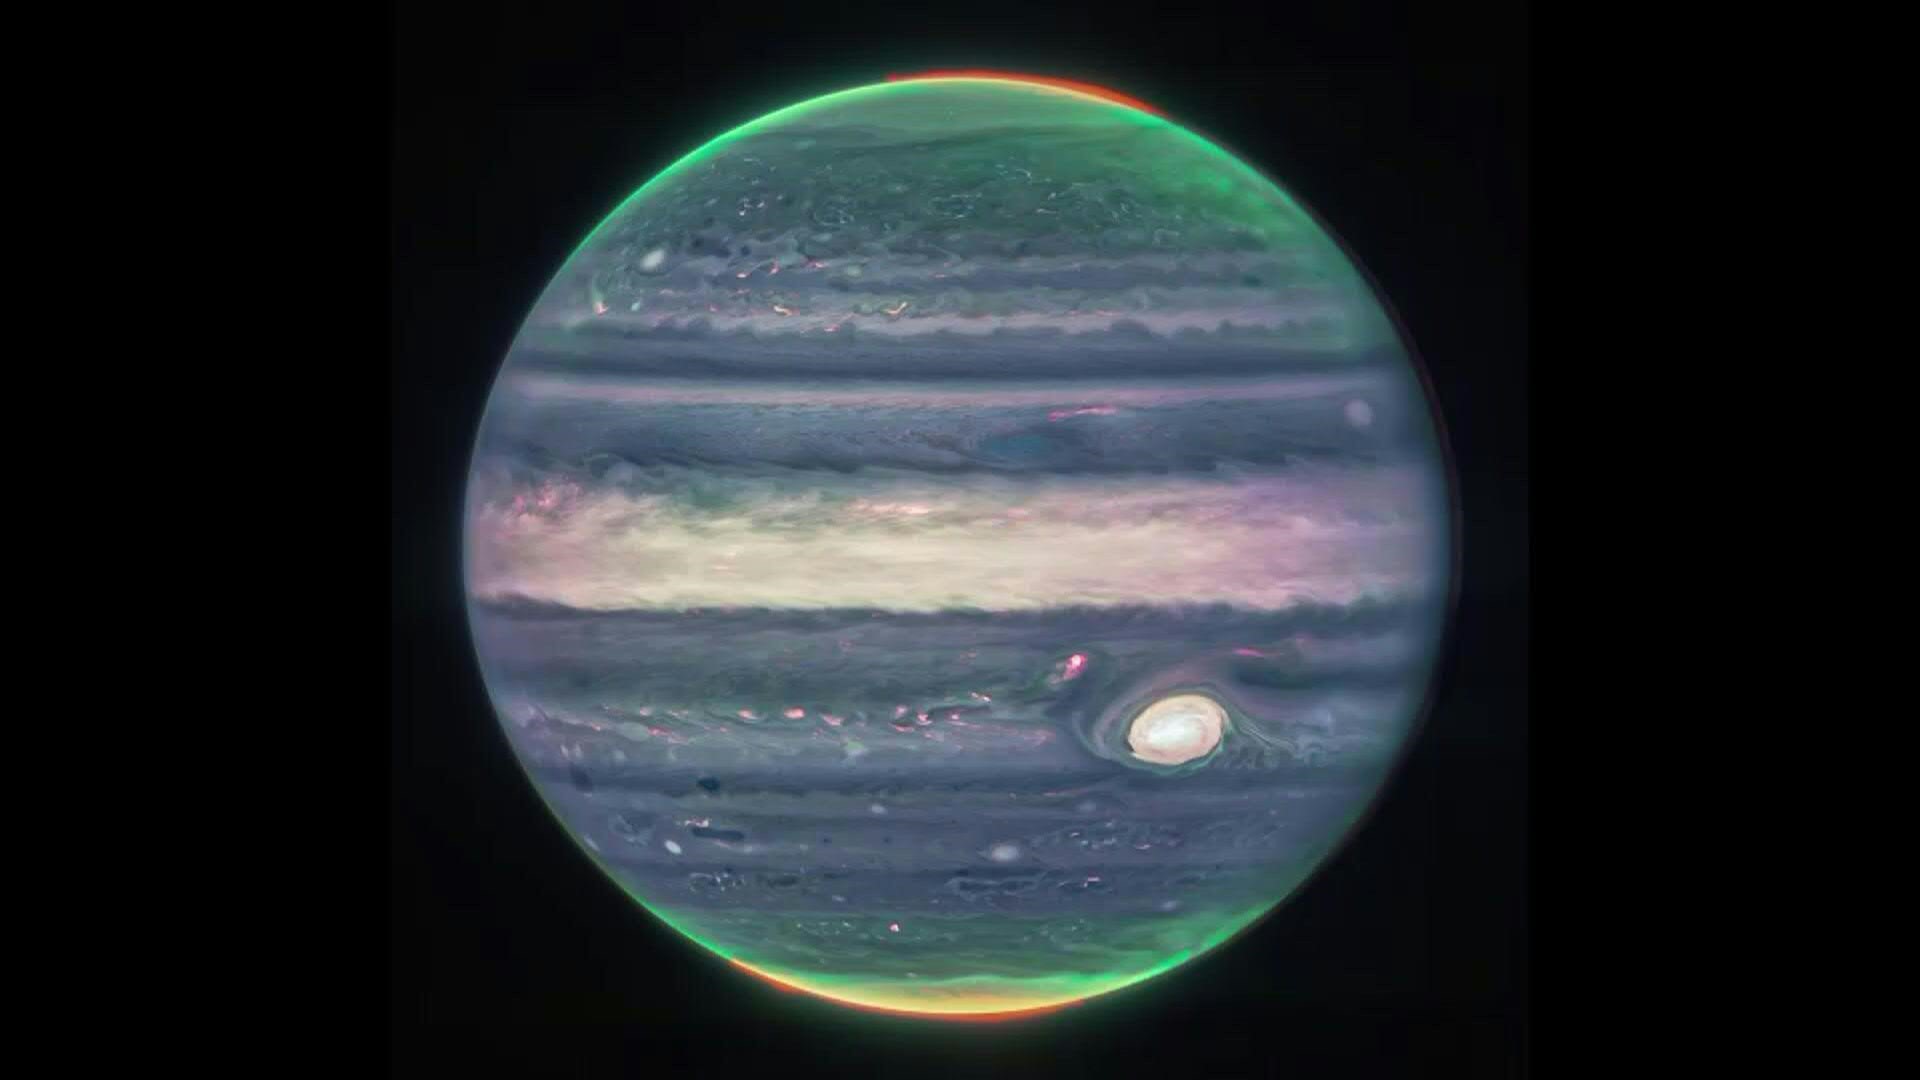 Impresionantes imágenes del planeta Júpiter, que muestran dos lunas diminutas, anillos tenues y auroras en los polos norte y sur, fueron tomadas por el telescopio espacial James Webb de la NASA (AFP)